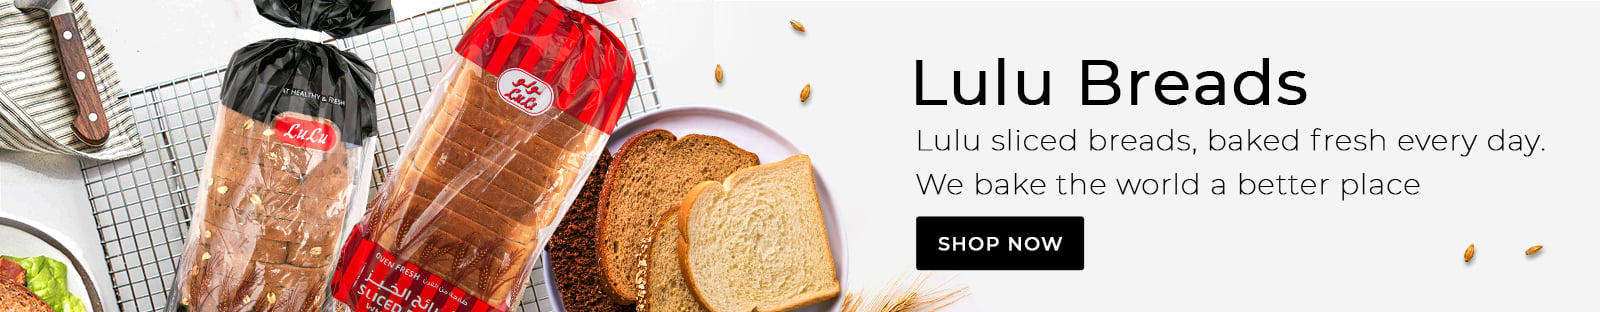 Lulu Breads